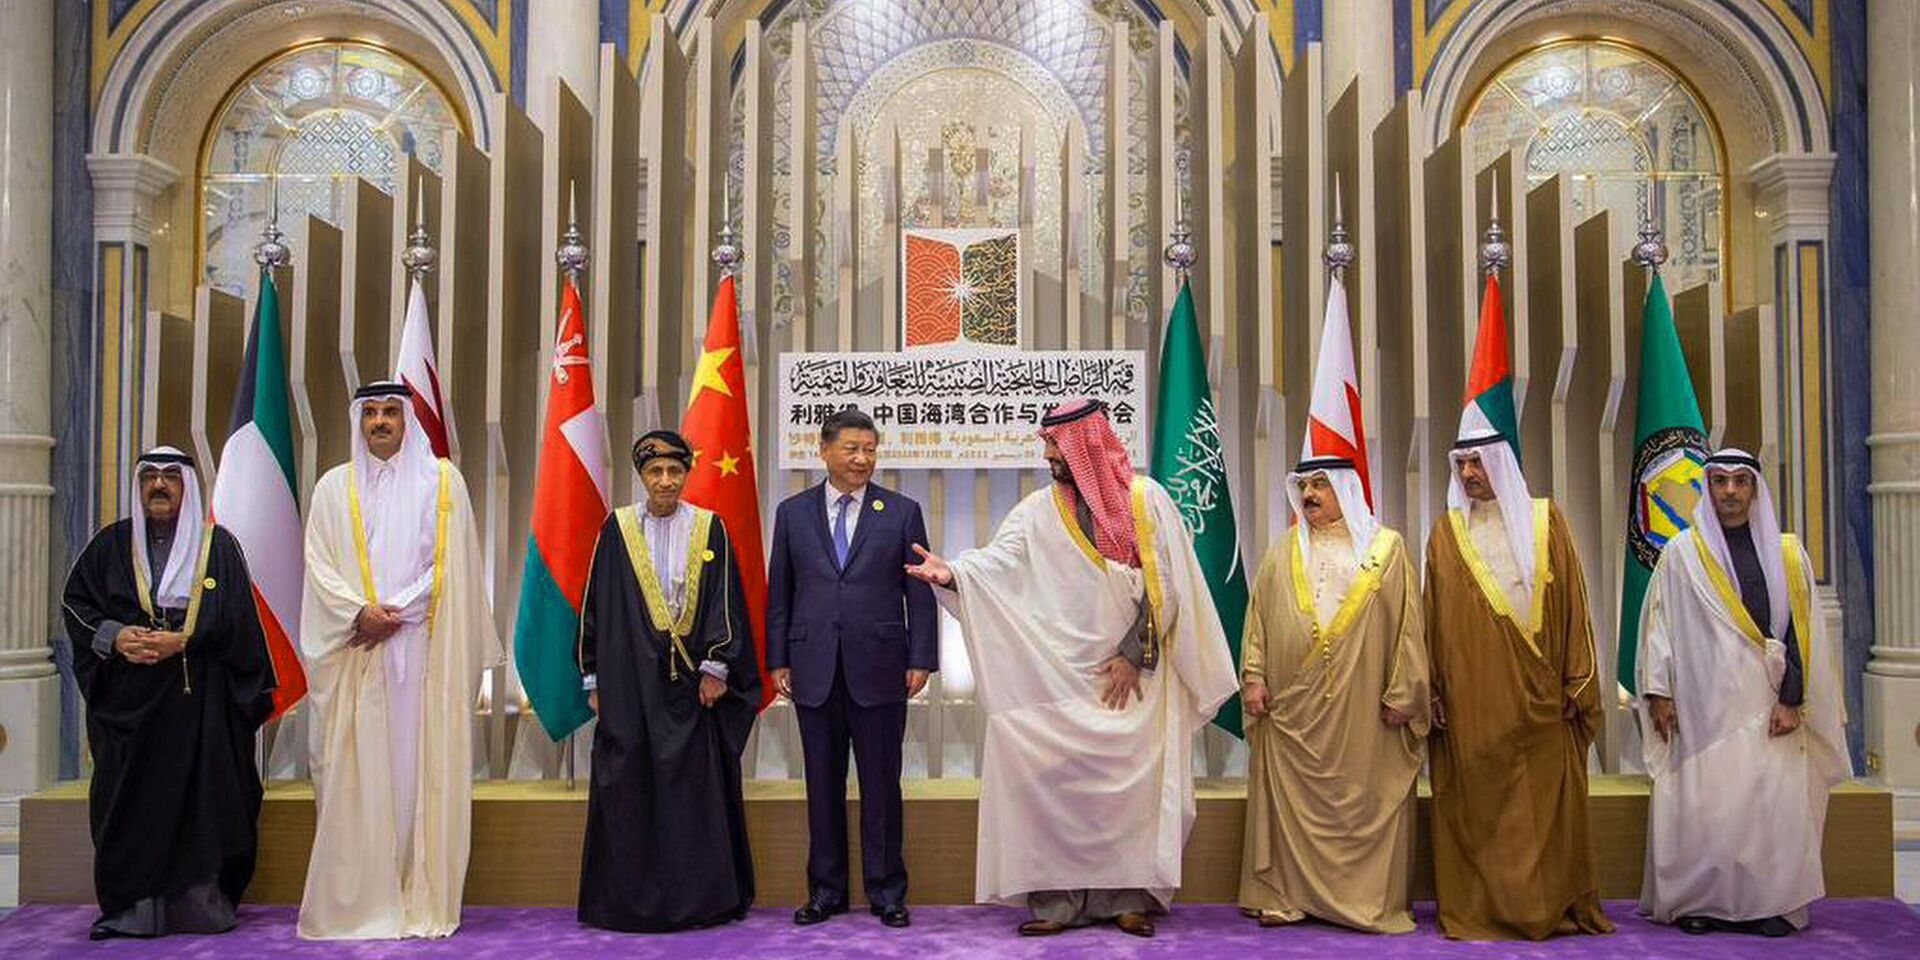 Председатель КНР Си Цзиньпин и наследный принц Саудовской Аравии Мухаммед бен Салман во время встречи в Эр-Рияде. 9 декабря 2022 года - ИноСМИ, 1920, 31.03.2023